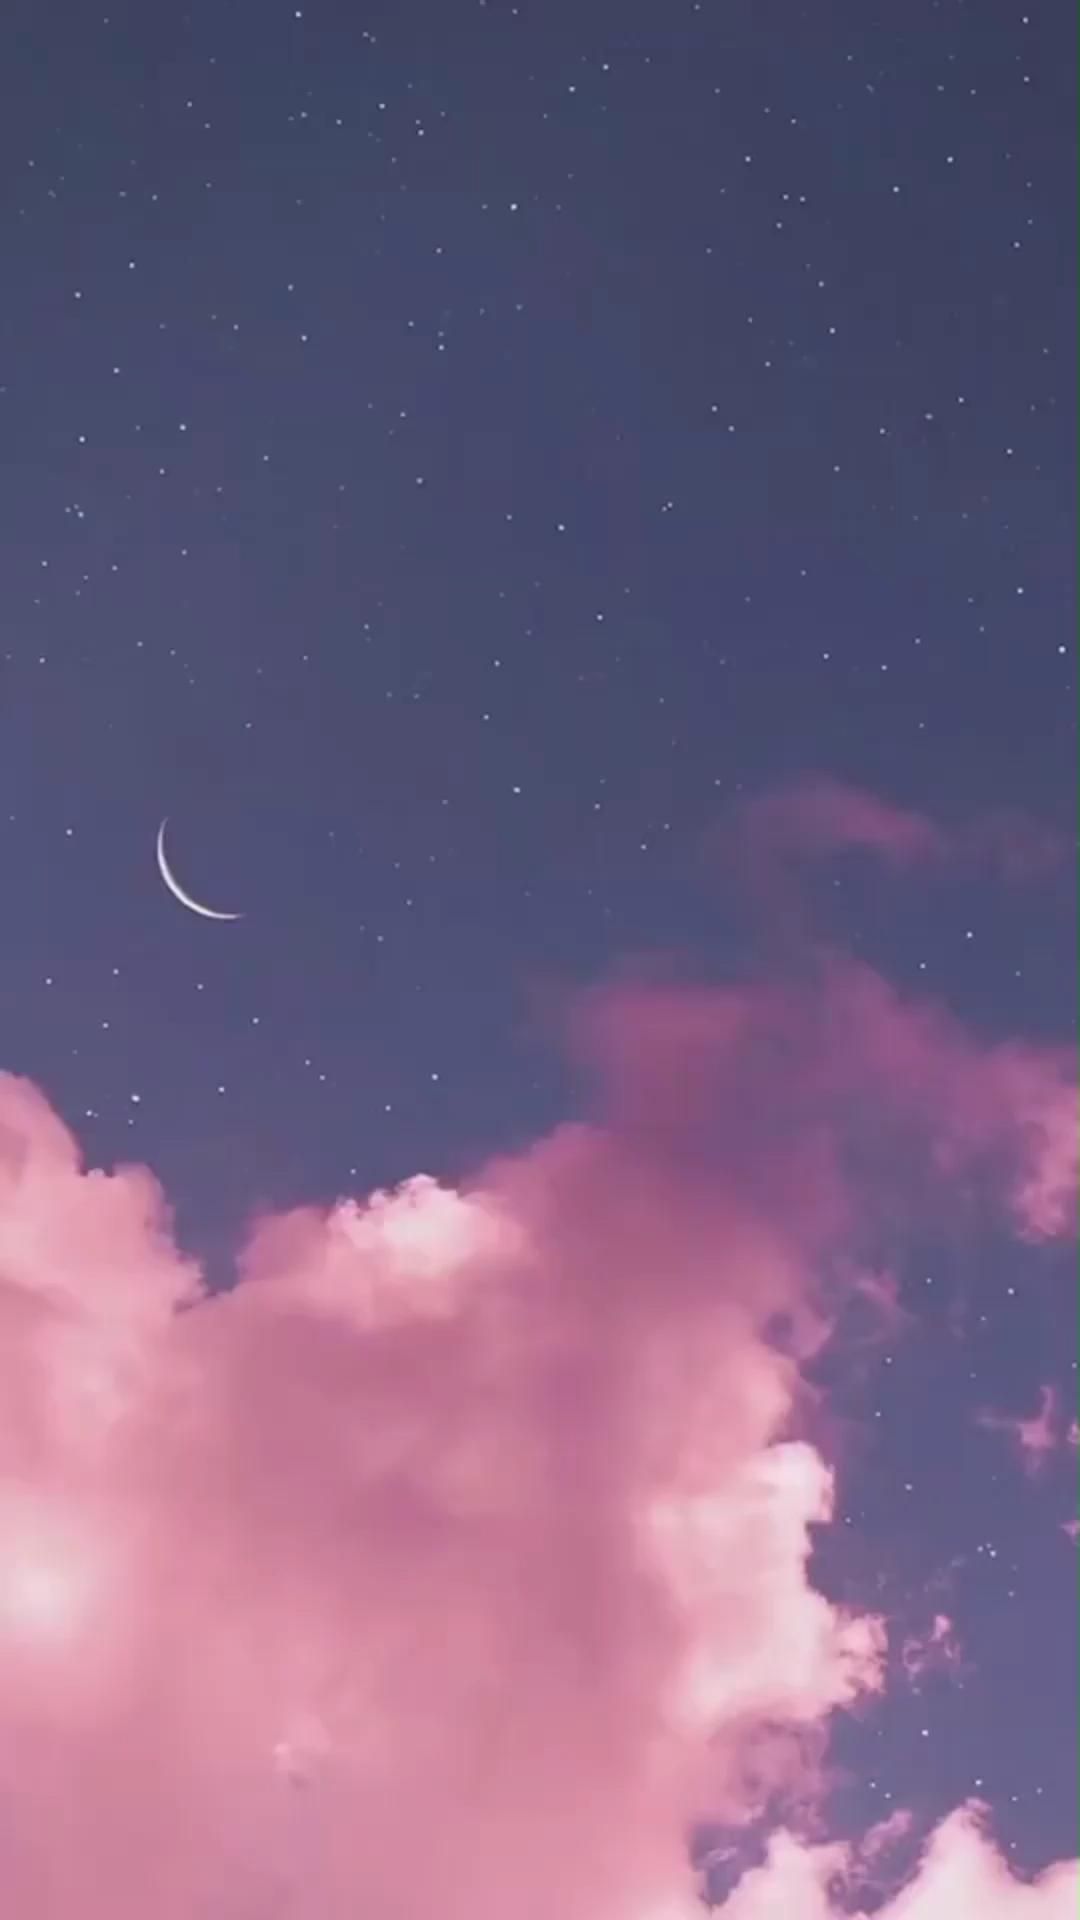 Ảnh bầu trời đêm màu hồng tím